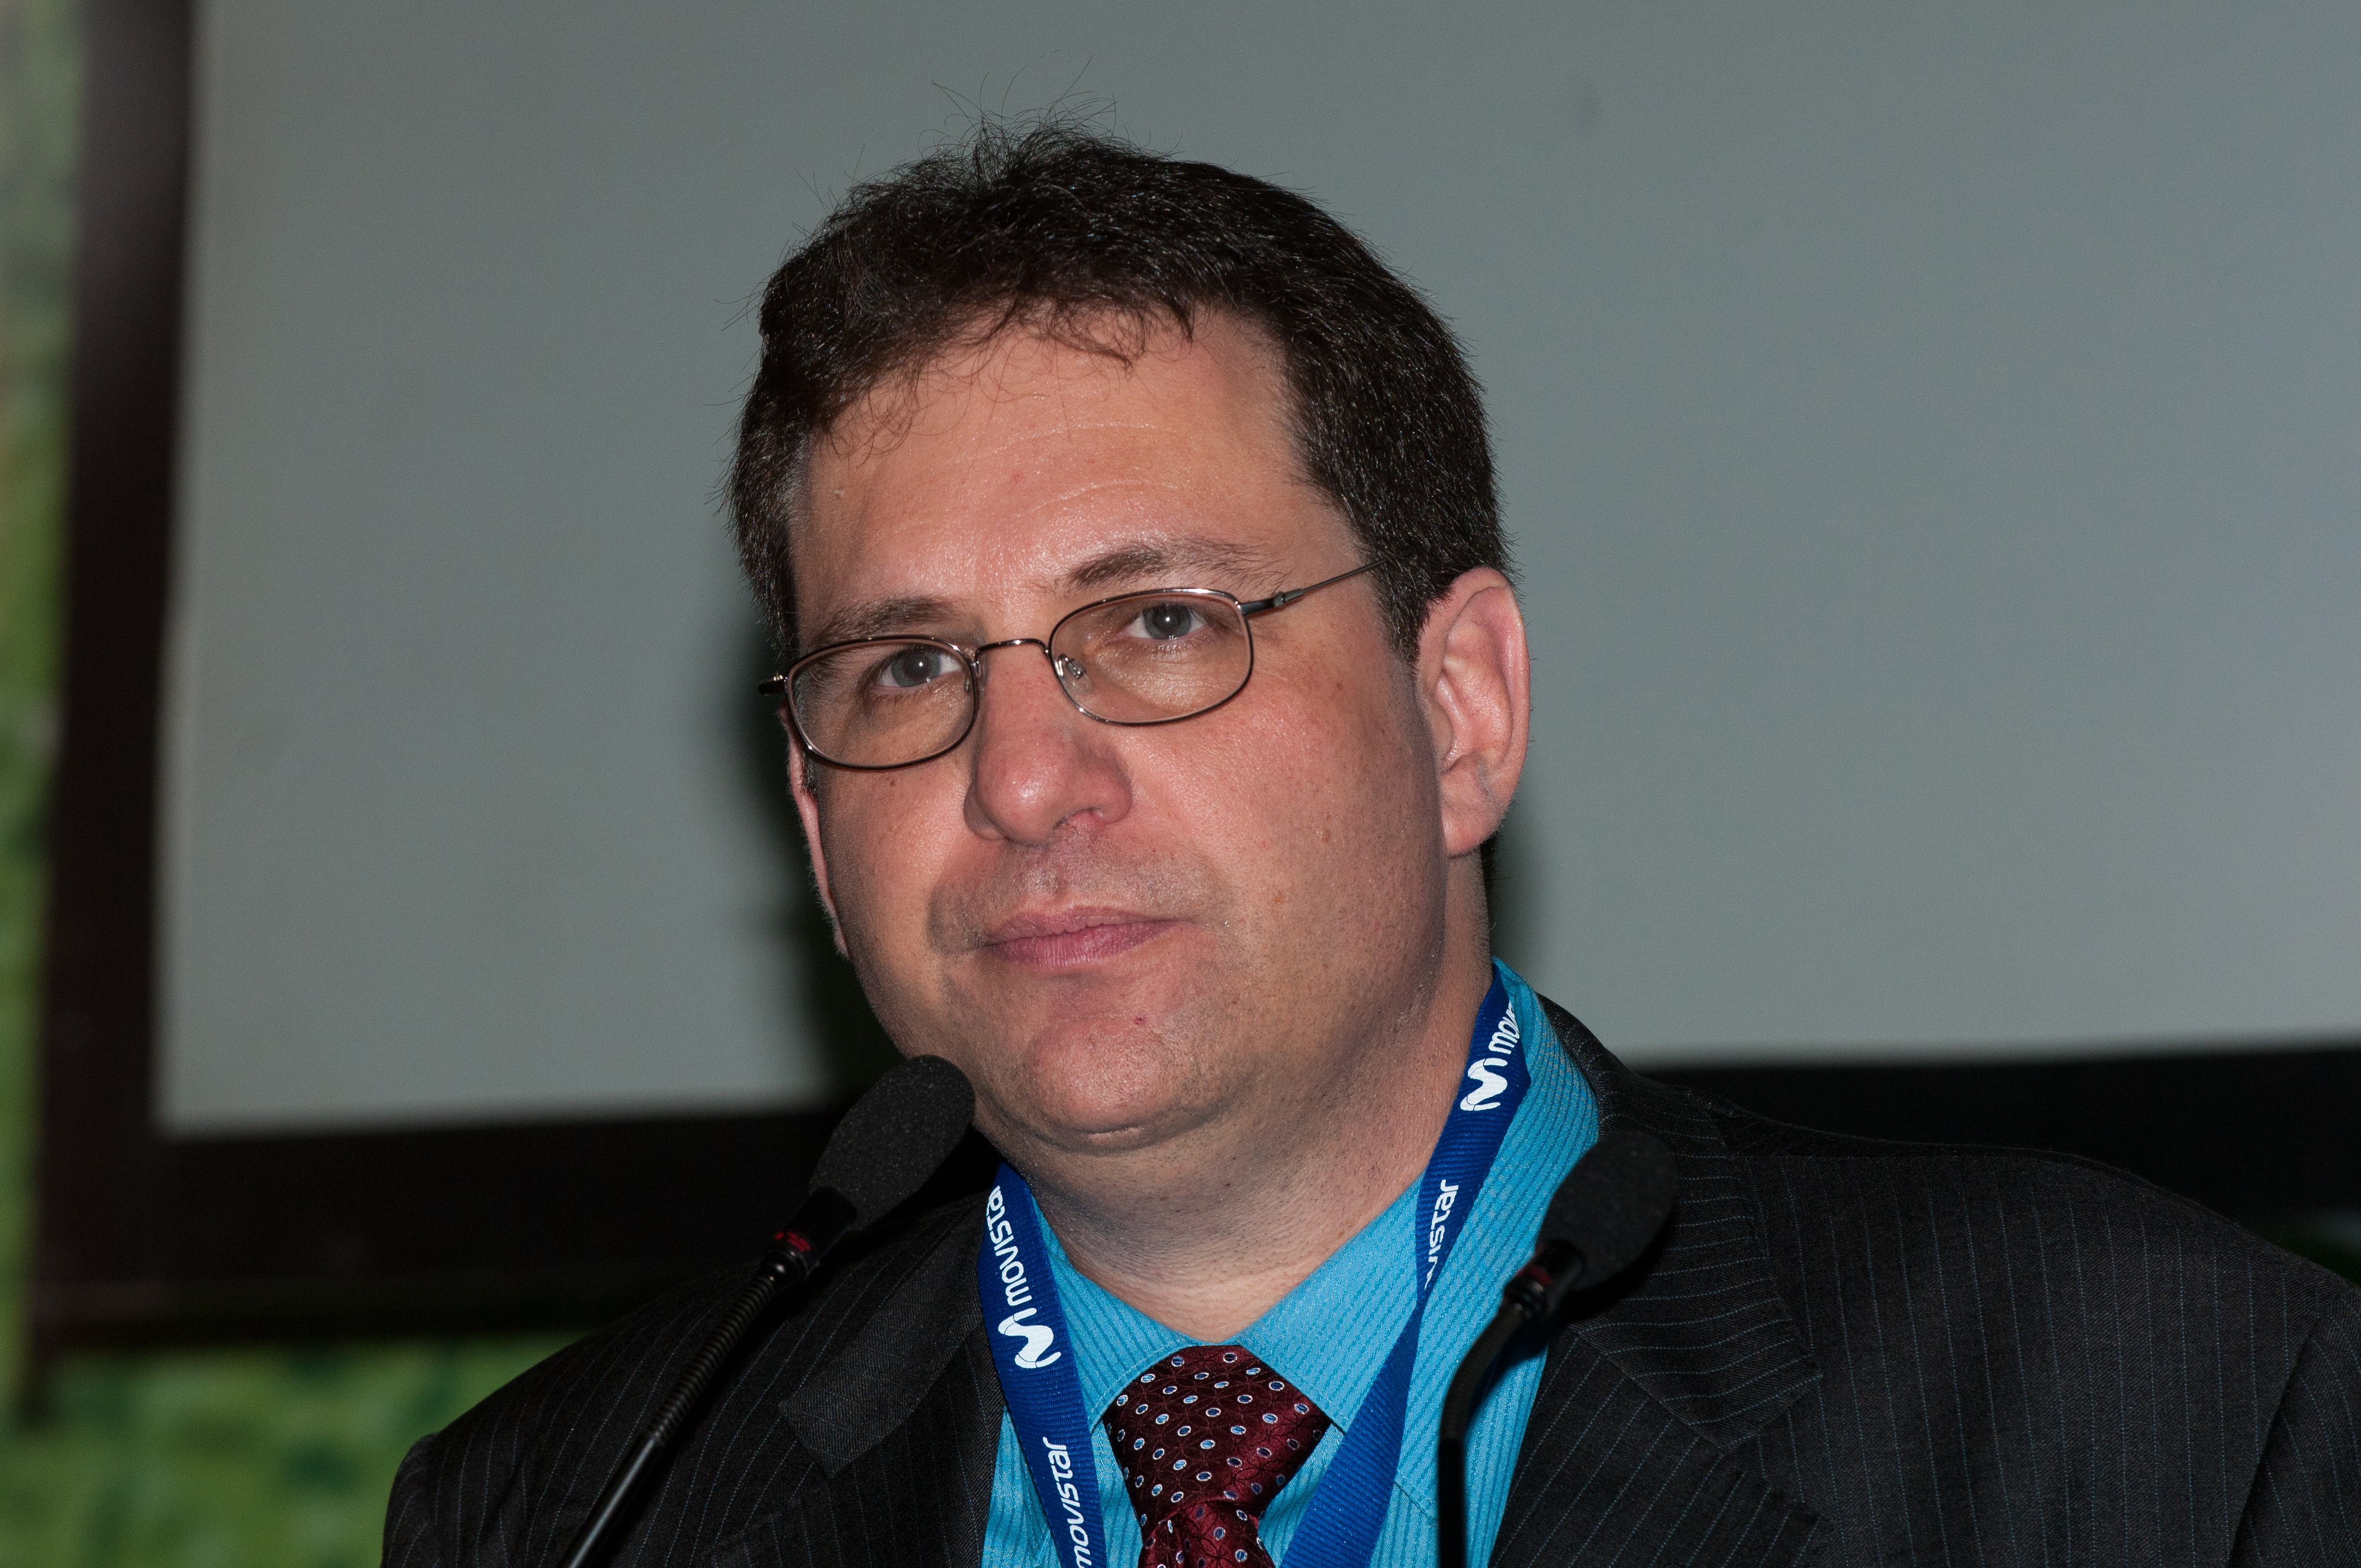 Mitnick in 2010